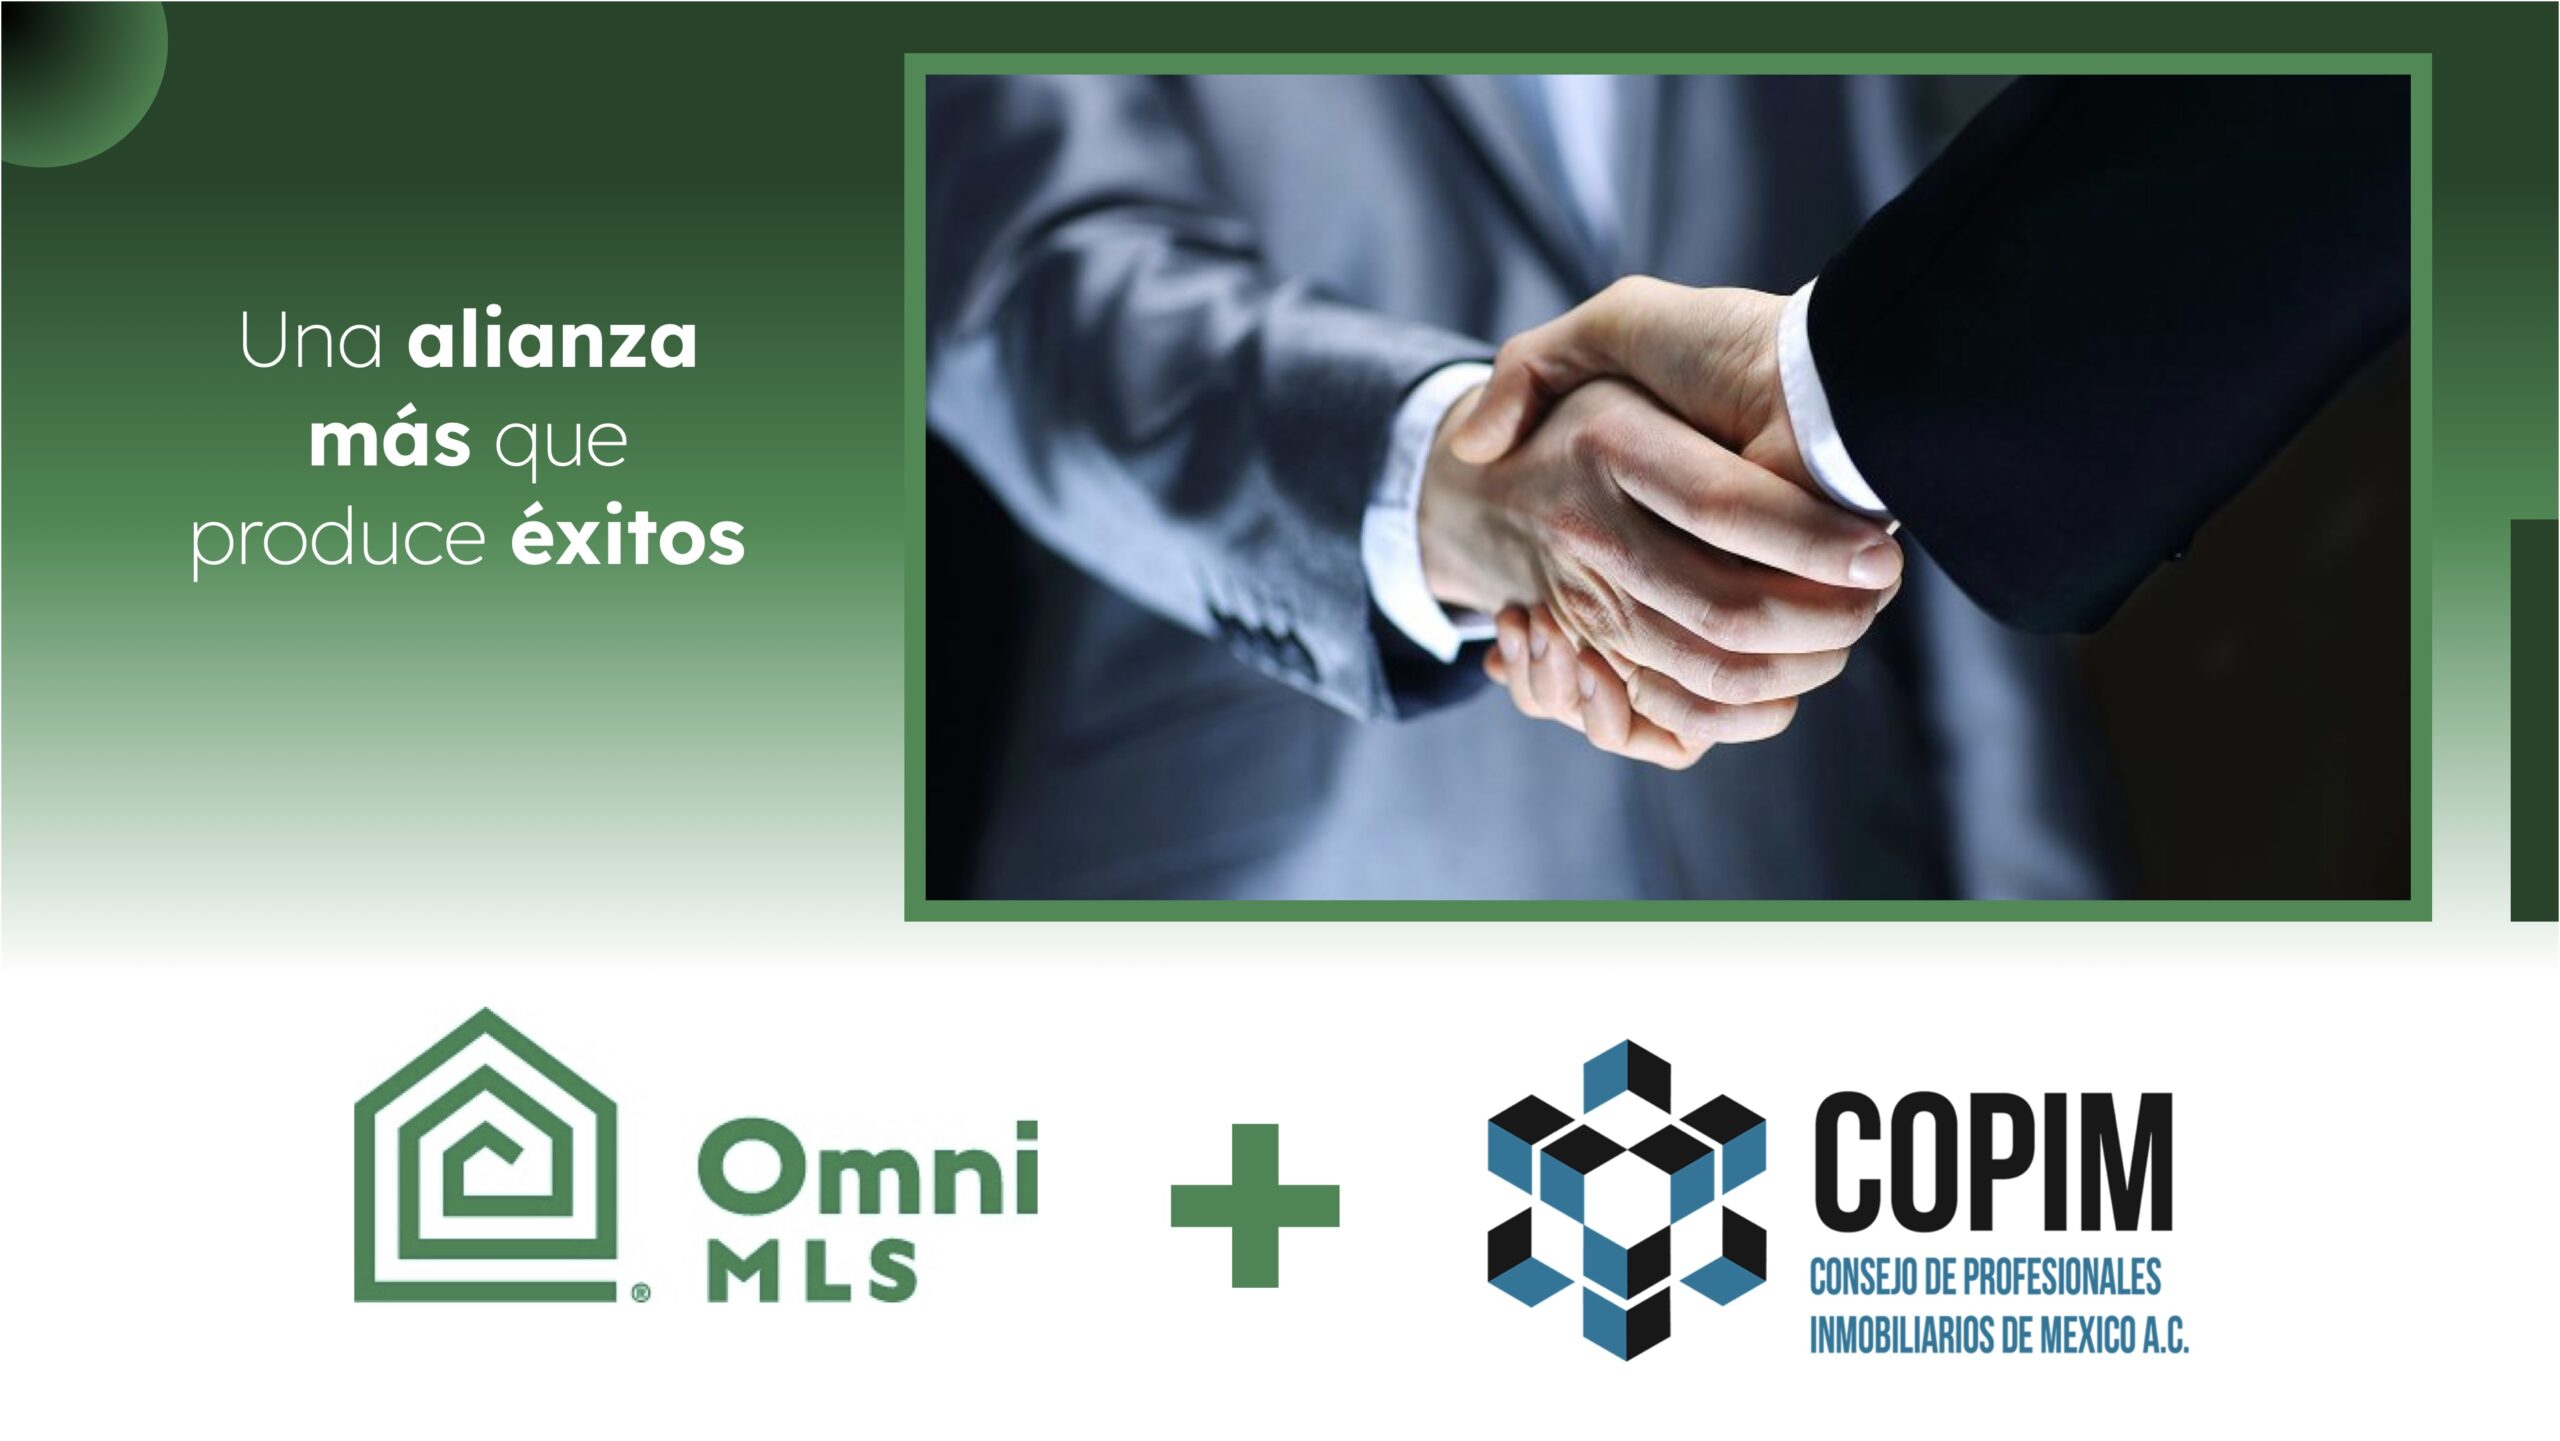 Omni MLS y la Confederación de Profesionales de México (COPIM) fortalecen la colaboración para impulsar el sector inmobiliario